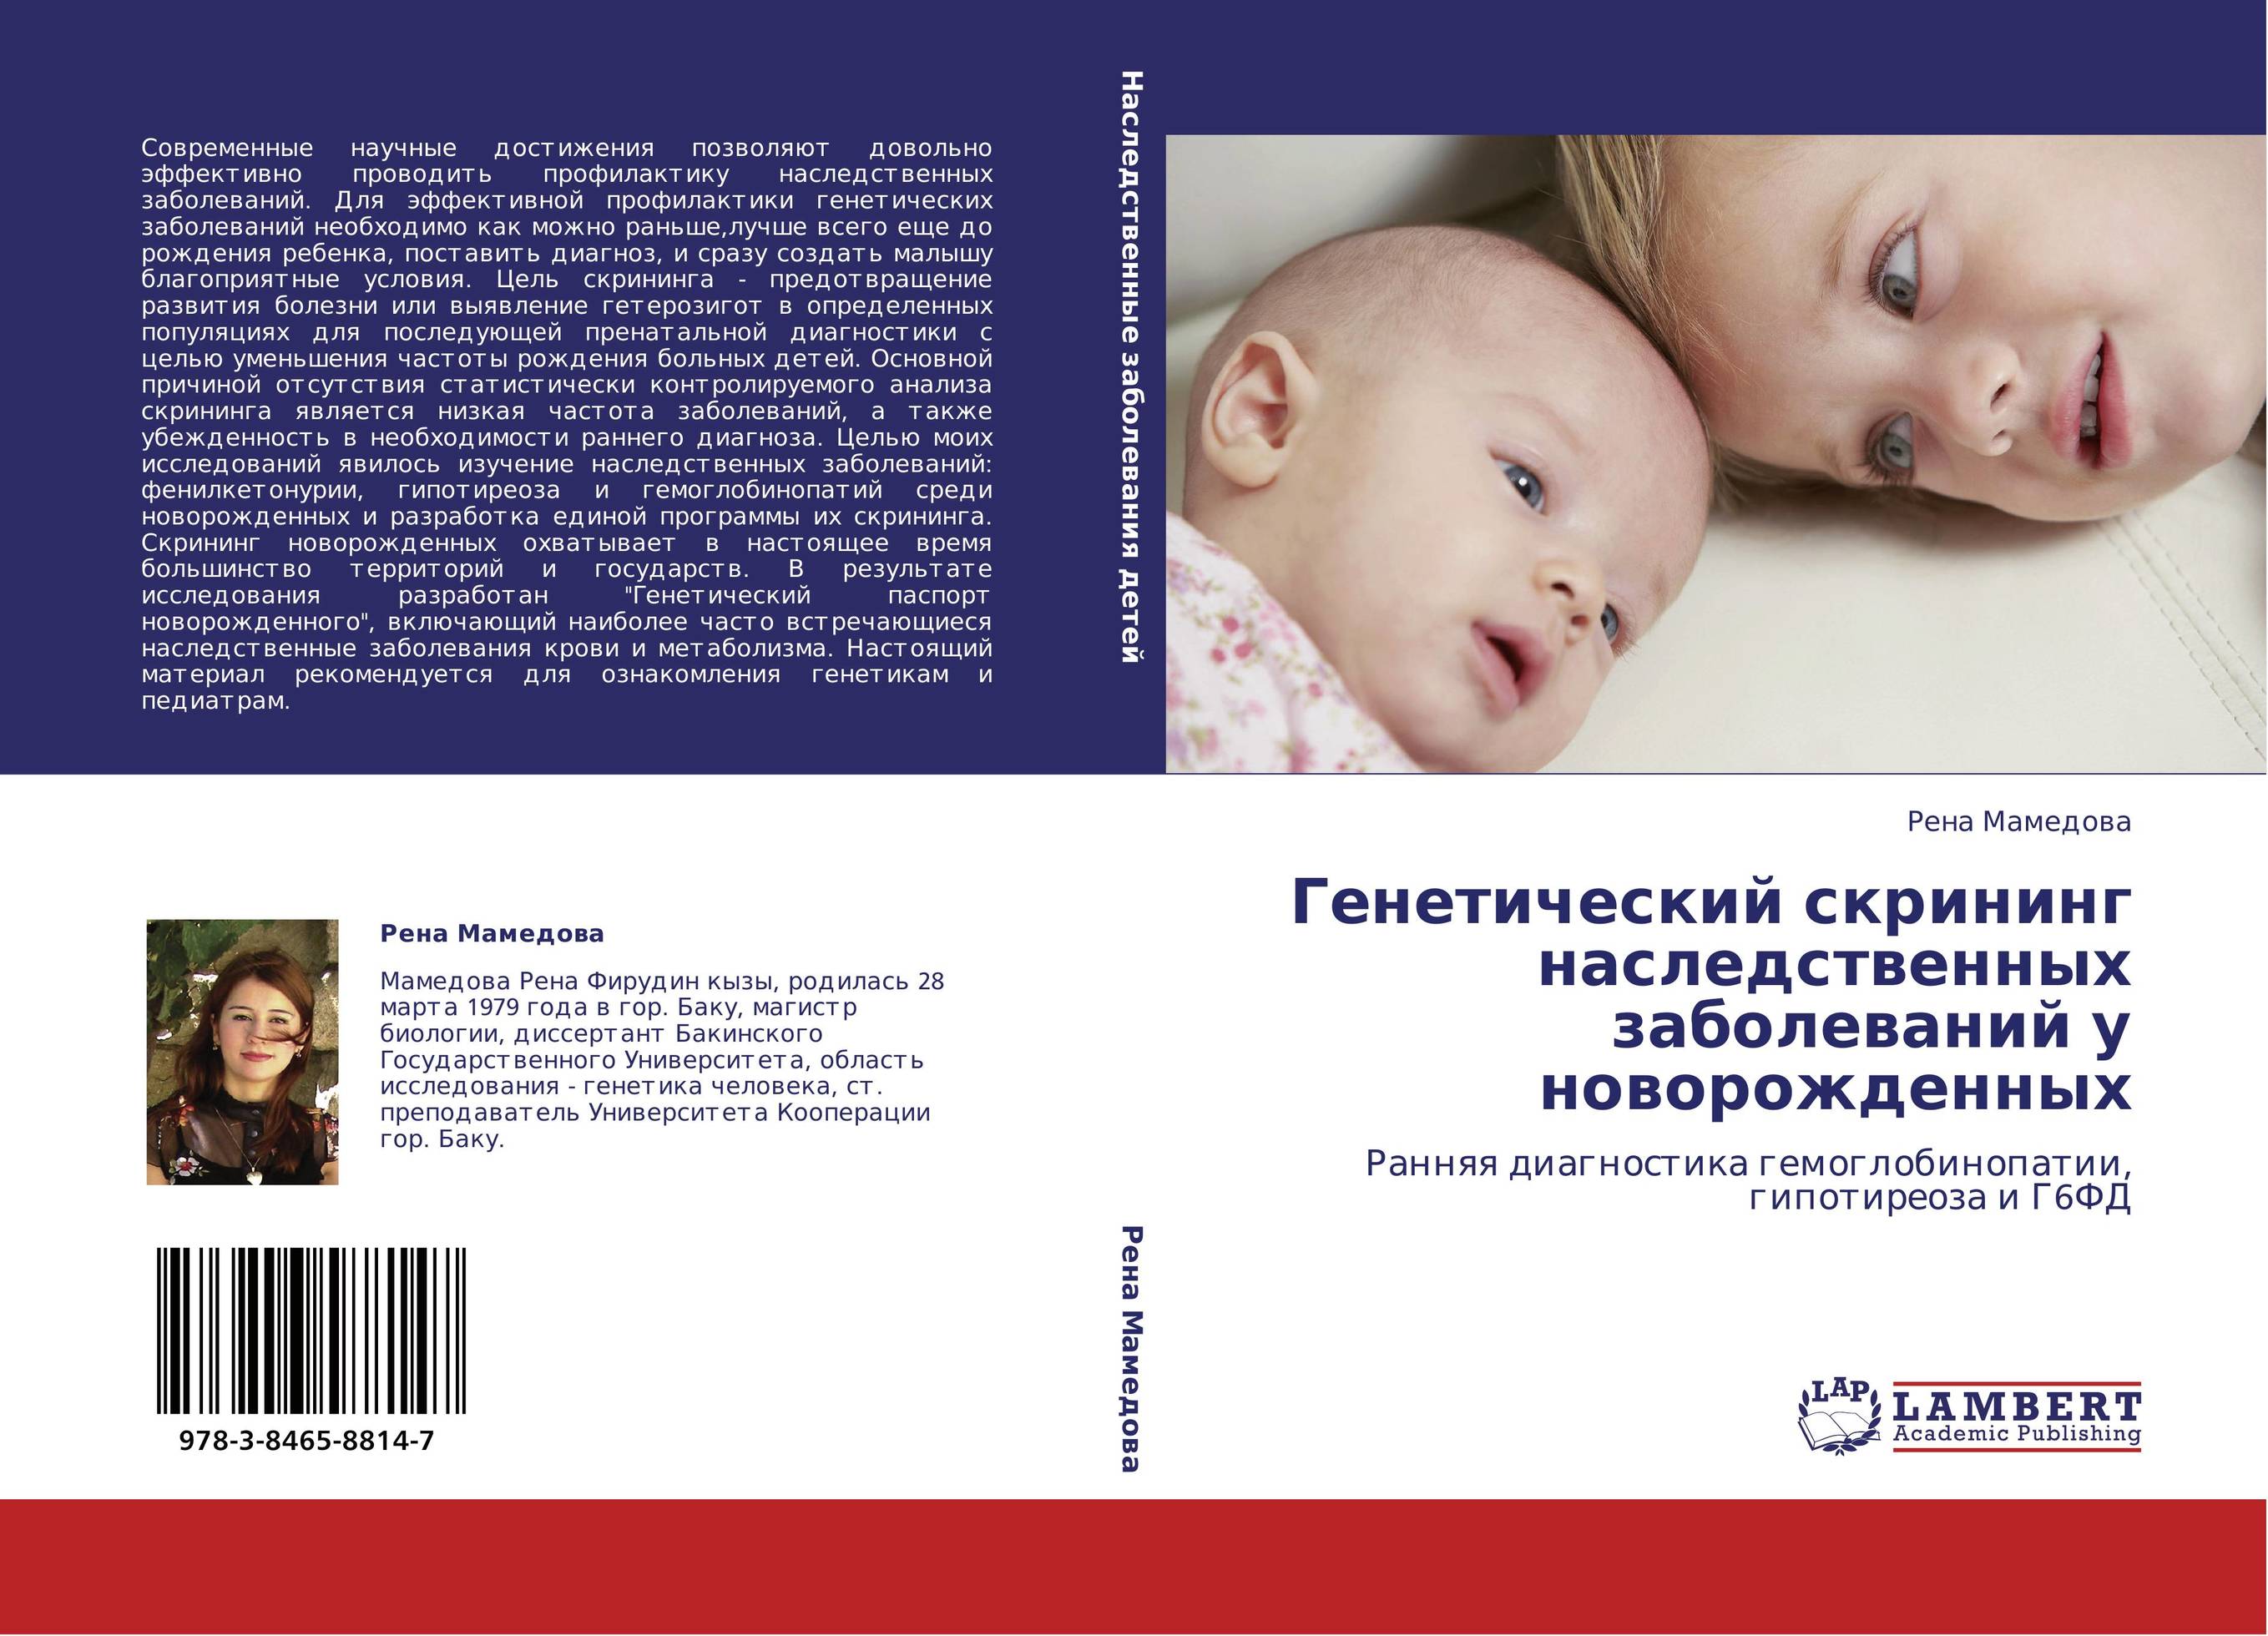 Неонатальный скрининг гипотиреоза. Скрининг на генетические заболевания у новорожденных. Книга генетические болезни детей. Книга по профилактике врожденных заболеваний новорожденных детей.